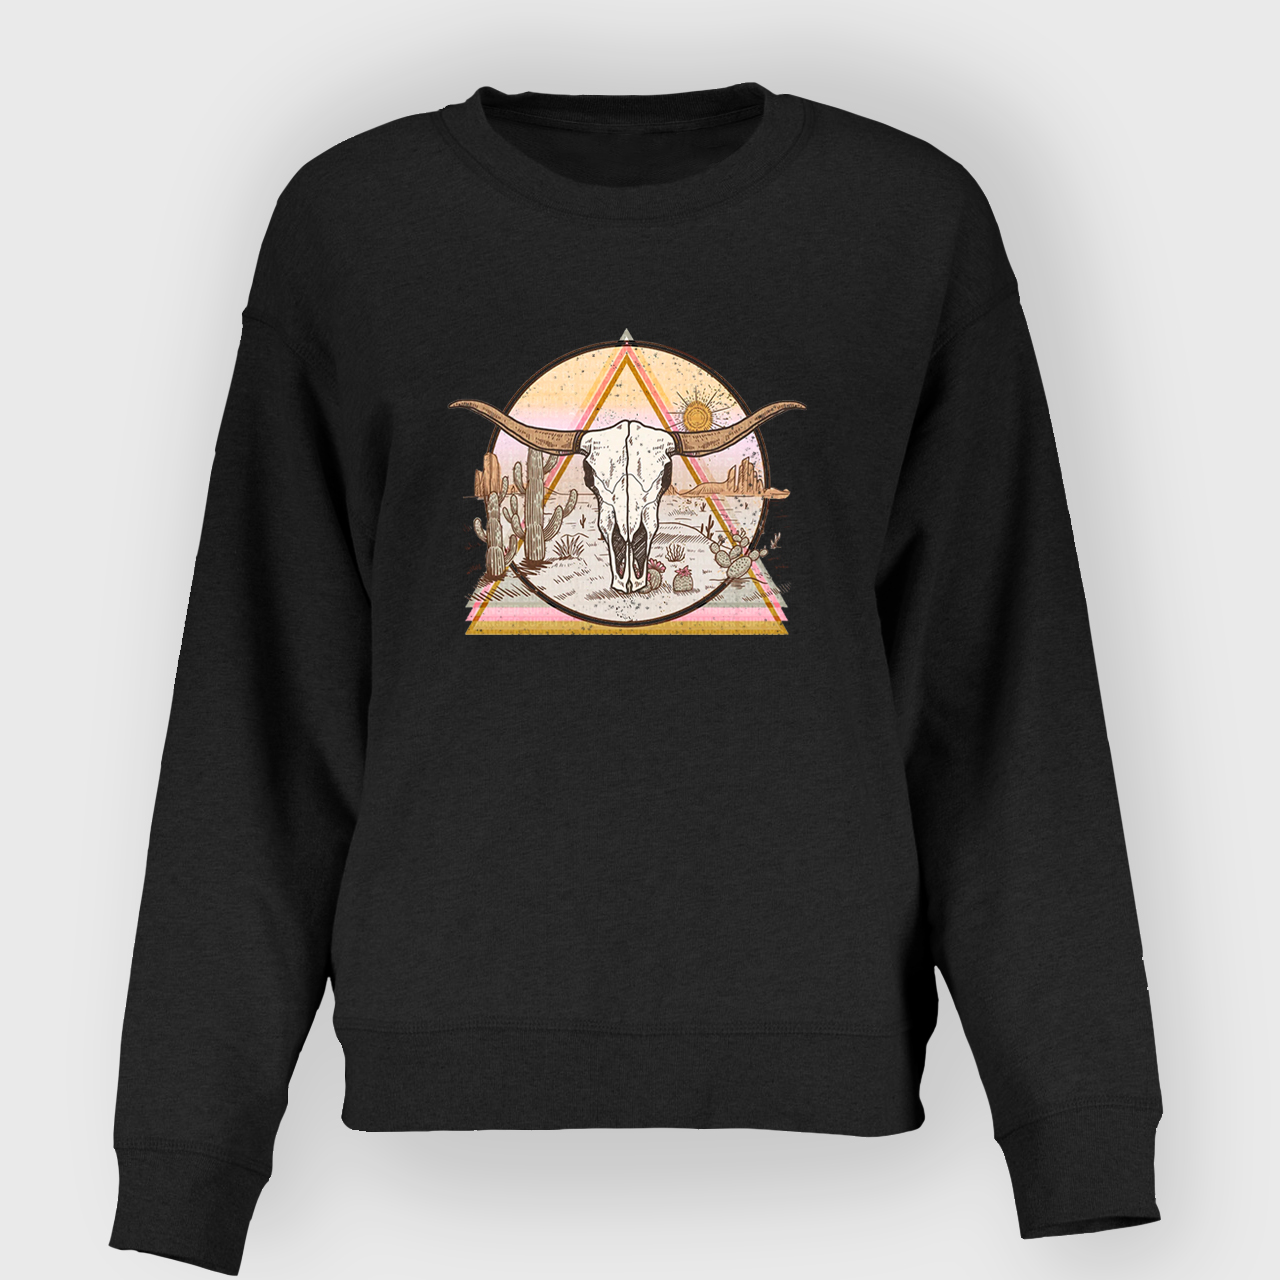 Mysterious Triangular Cow Skull Desert Sweatshirt